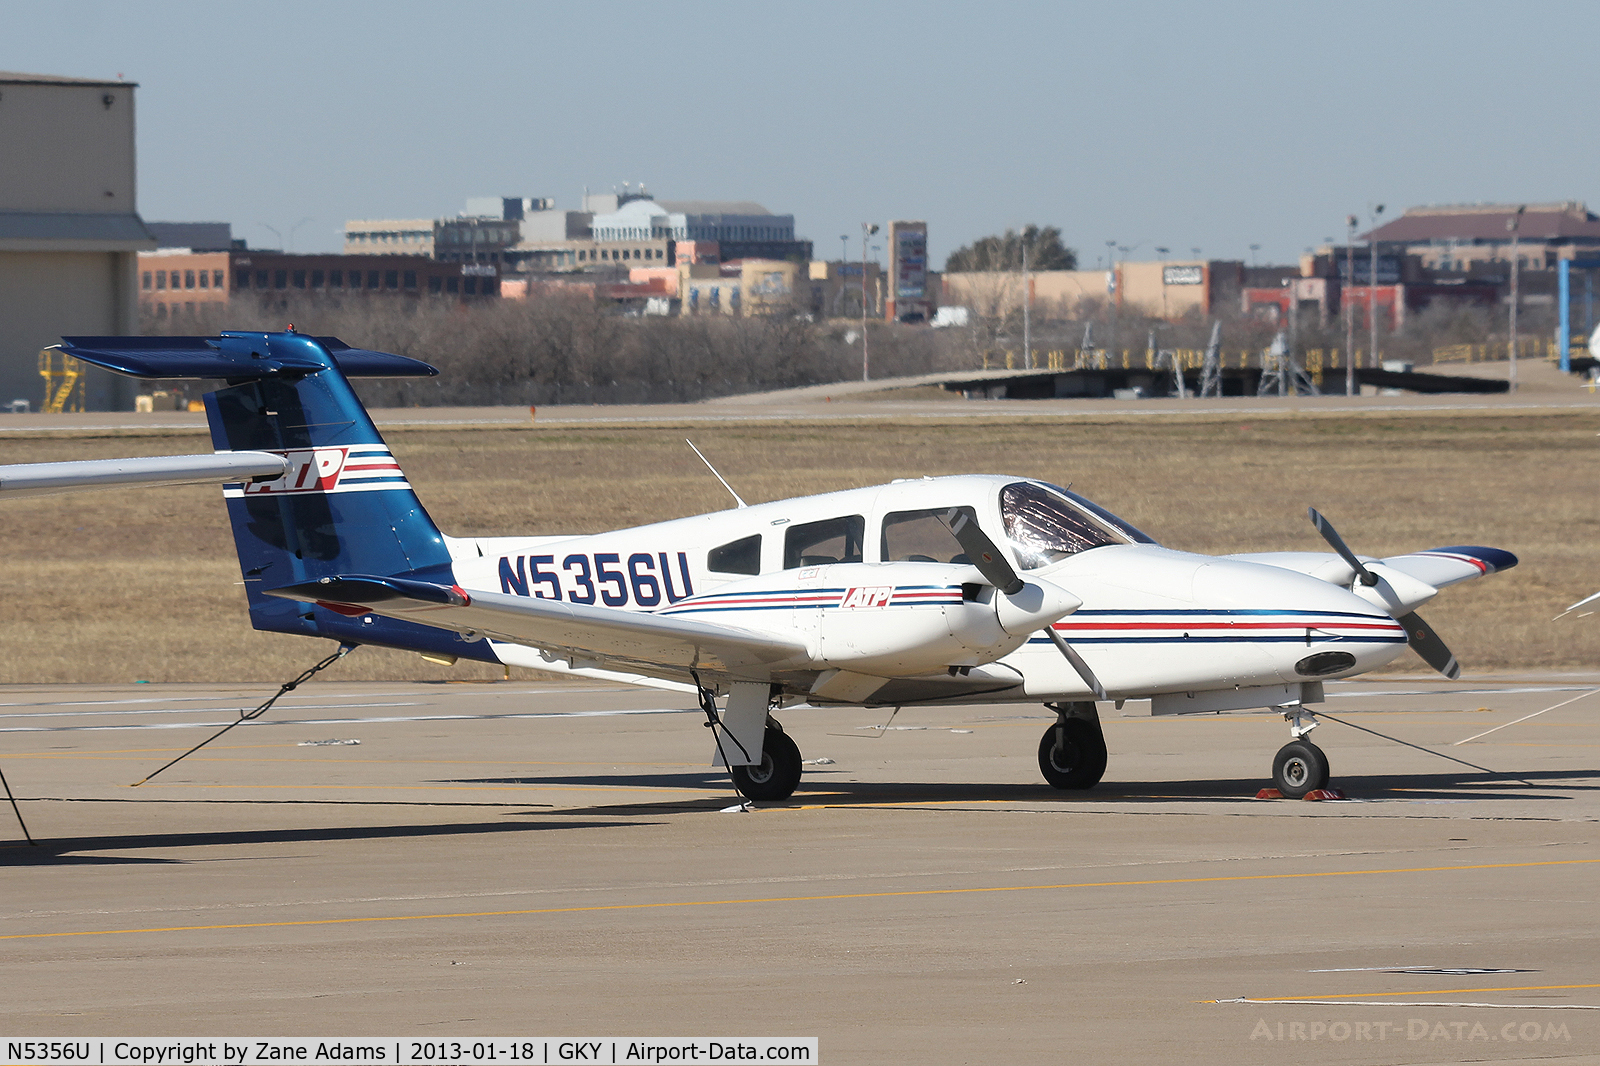 N5356U, 2002 Piper PA-44-180 Seminole C/N 4496164, ATP flight school twin at Arlington Municipal Airport